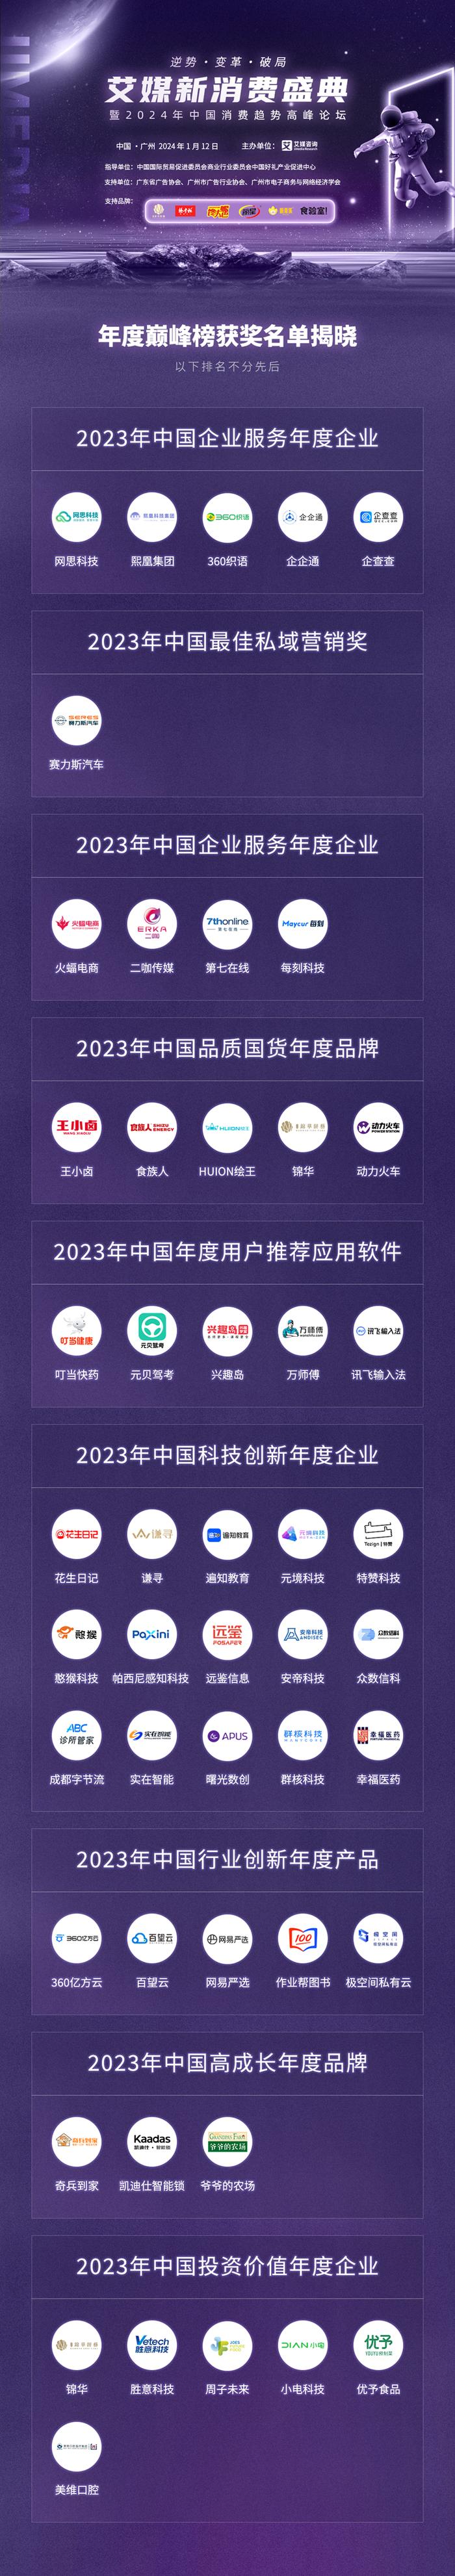 艾媒新消费盛典暨2024年中国消费趋势高峰论坛活动圆满闭幕！大会亮点集锦